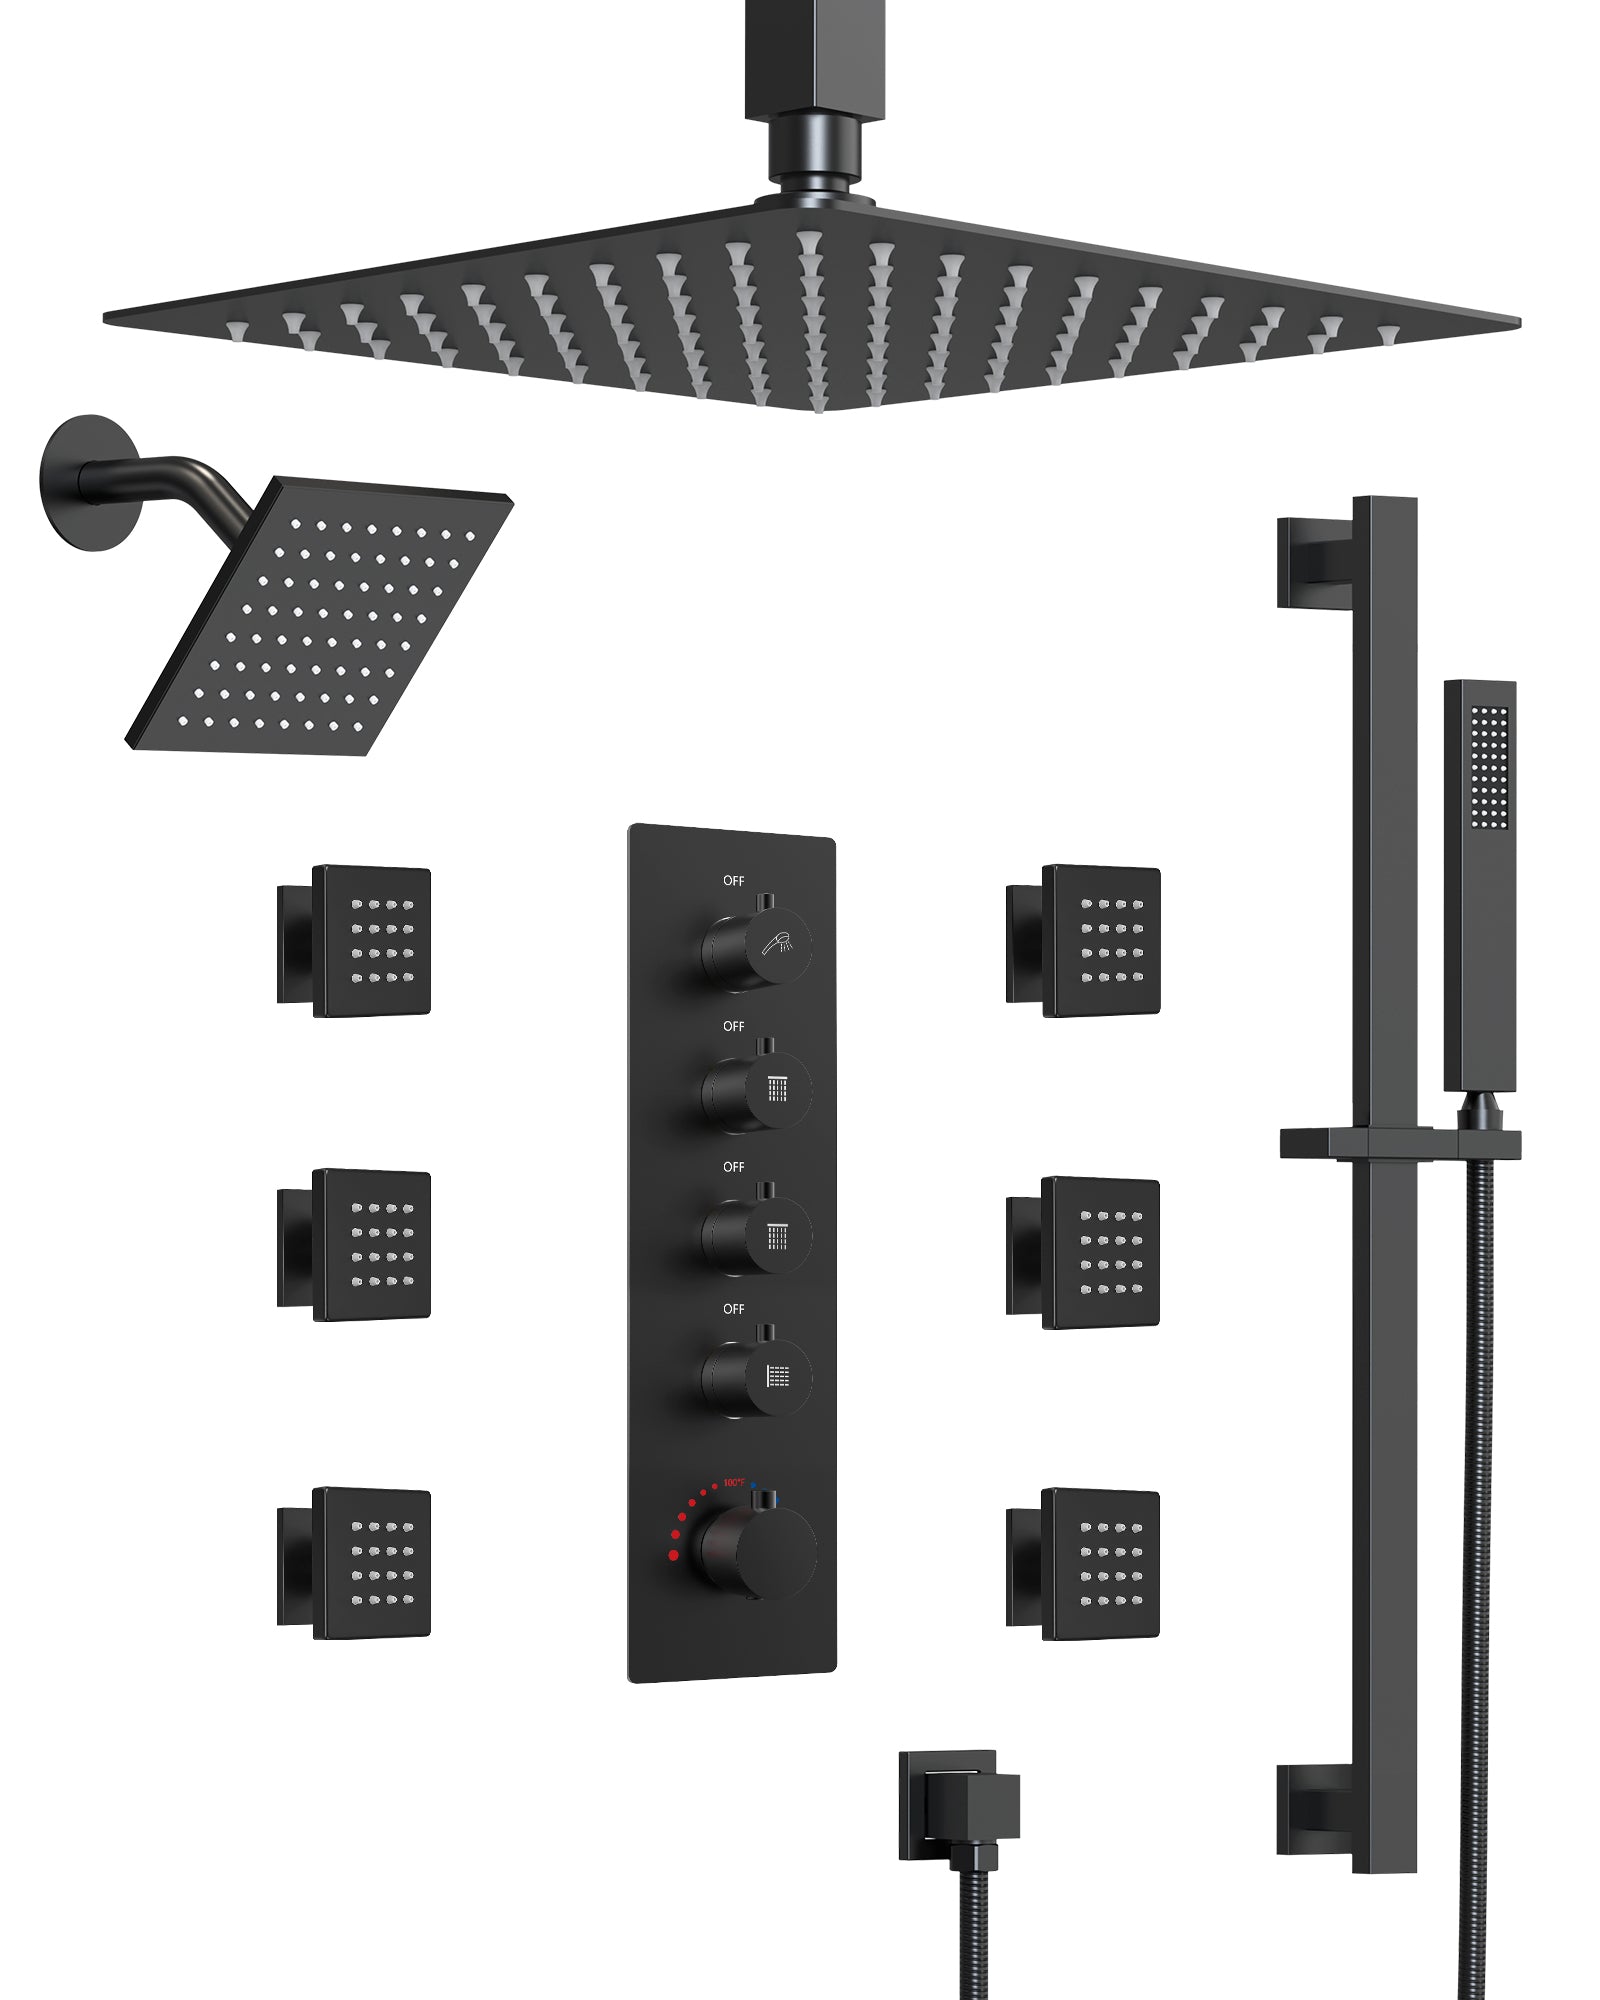 EVERSTEIN Matte Black Dual Shower Heads System - 13-Spray Modes, 16" High-Pressure Rainfall, Handheld Spray, Body Massage Jets